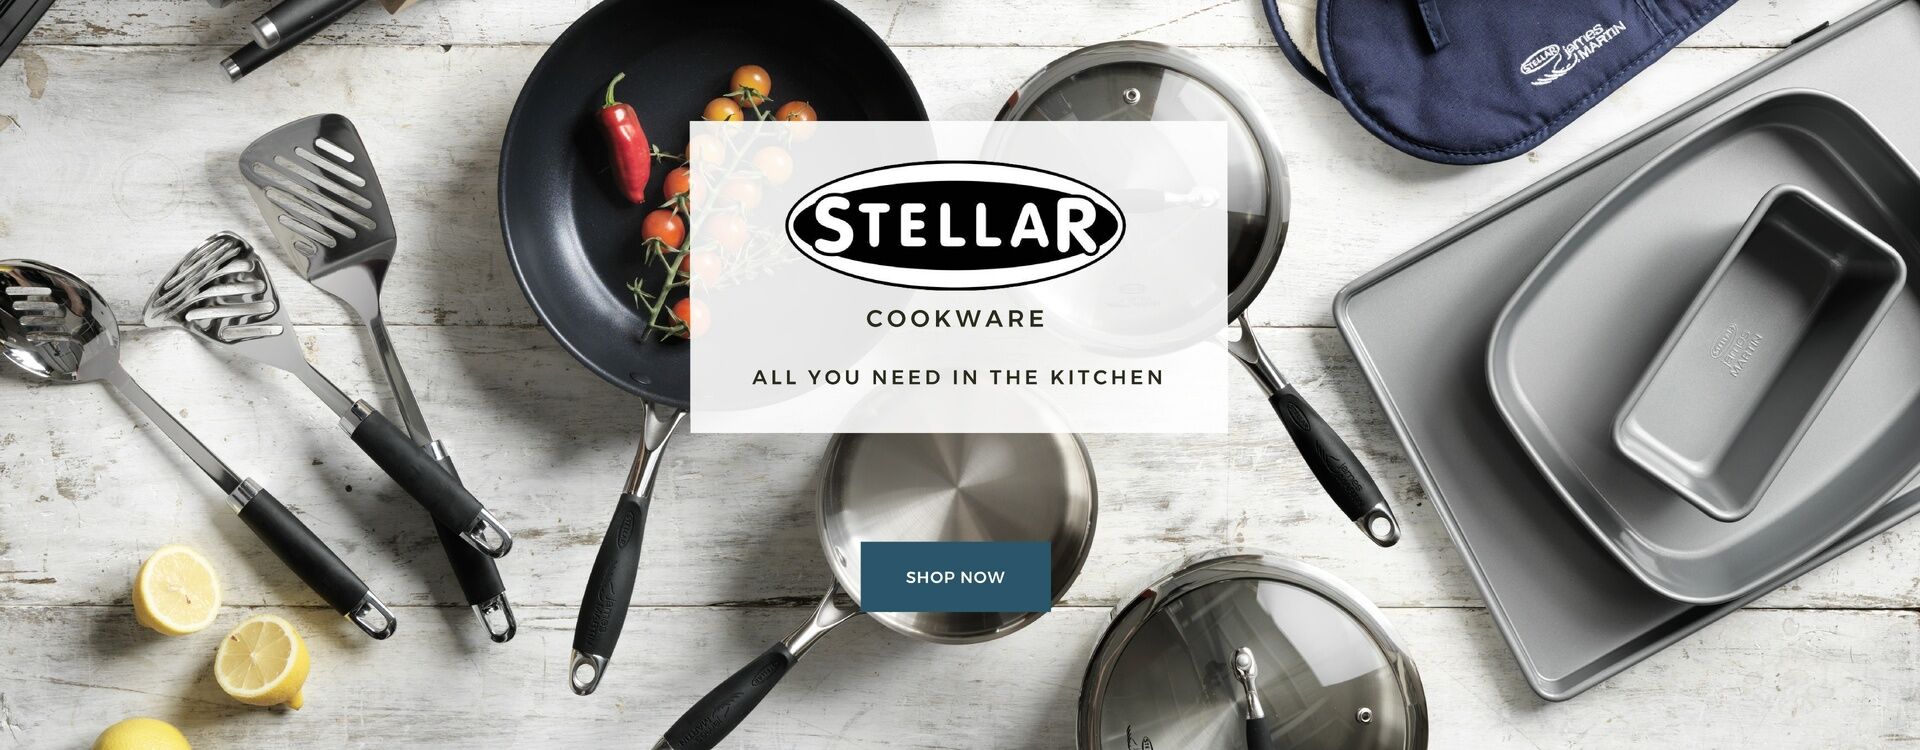 Stellar Cookware